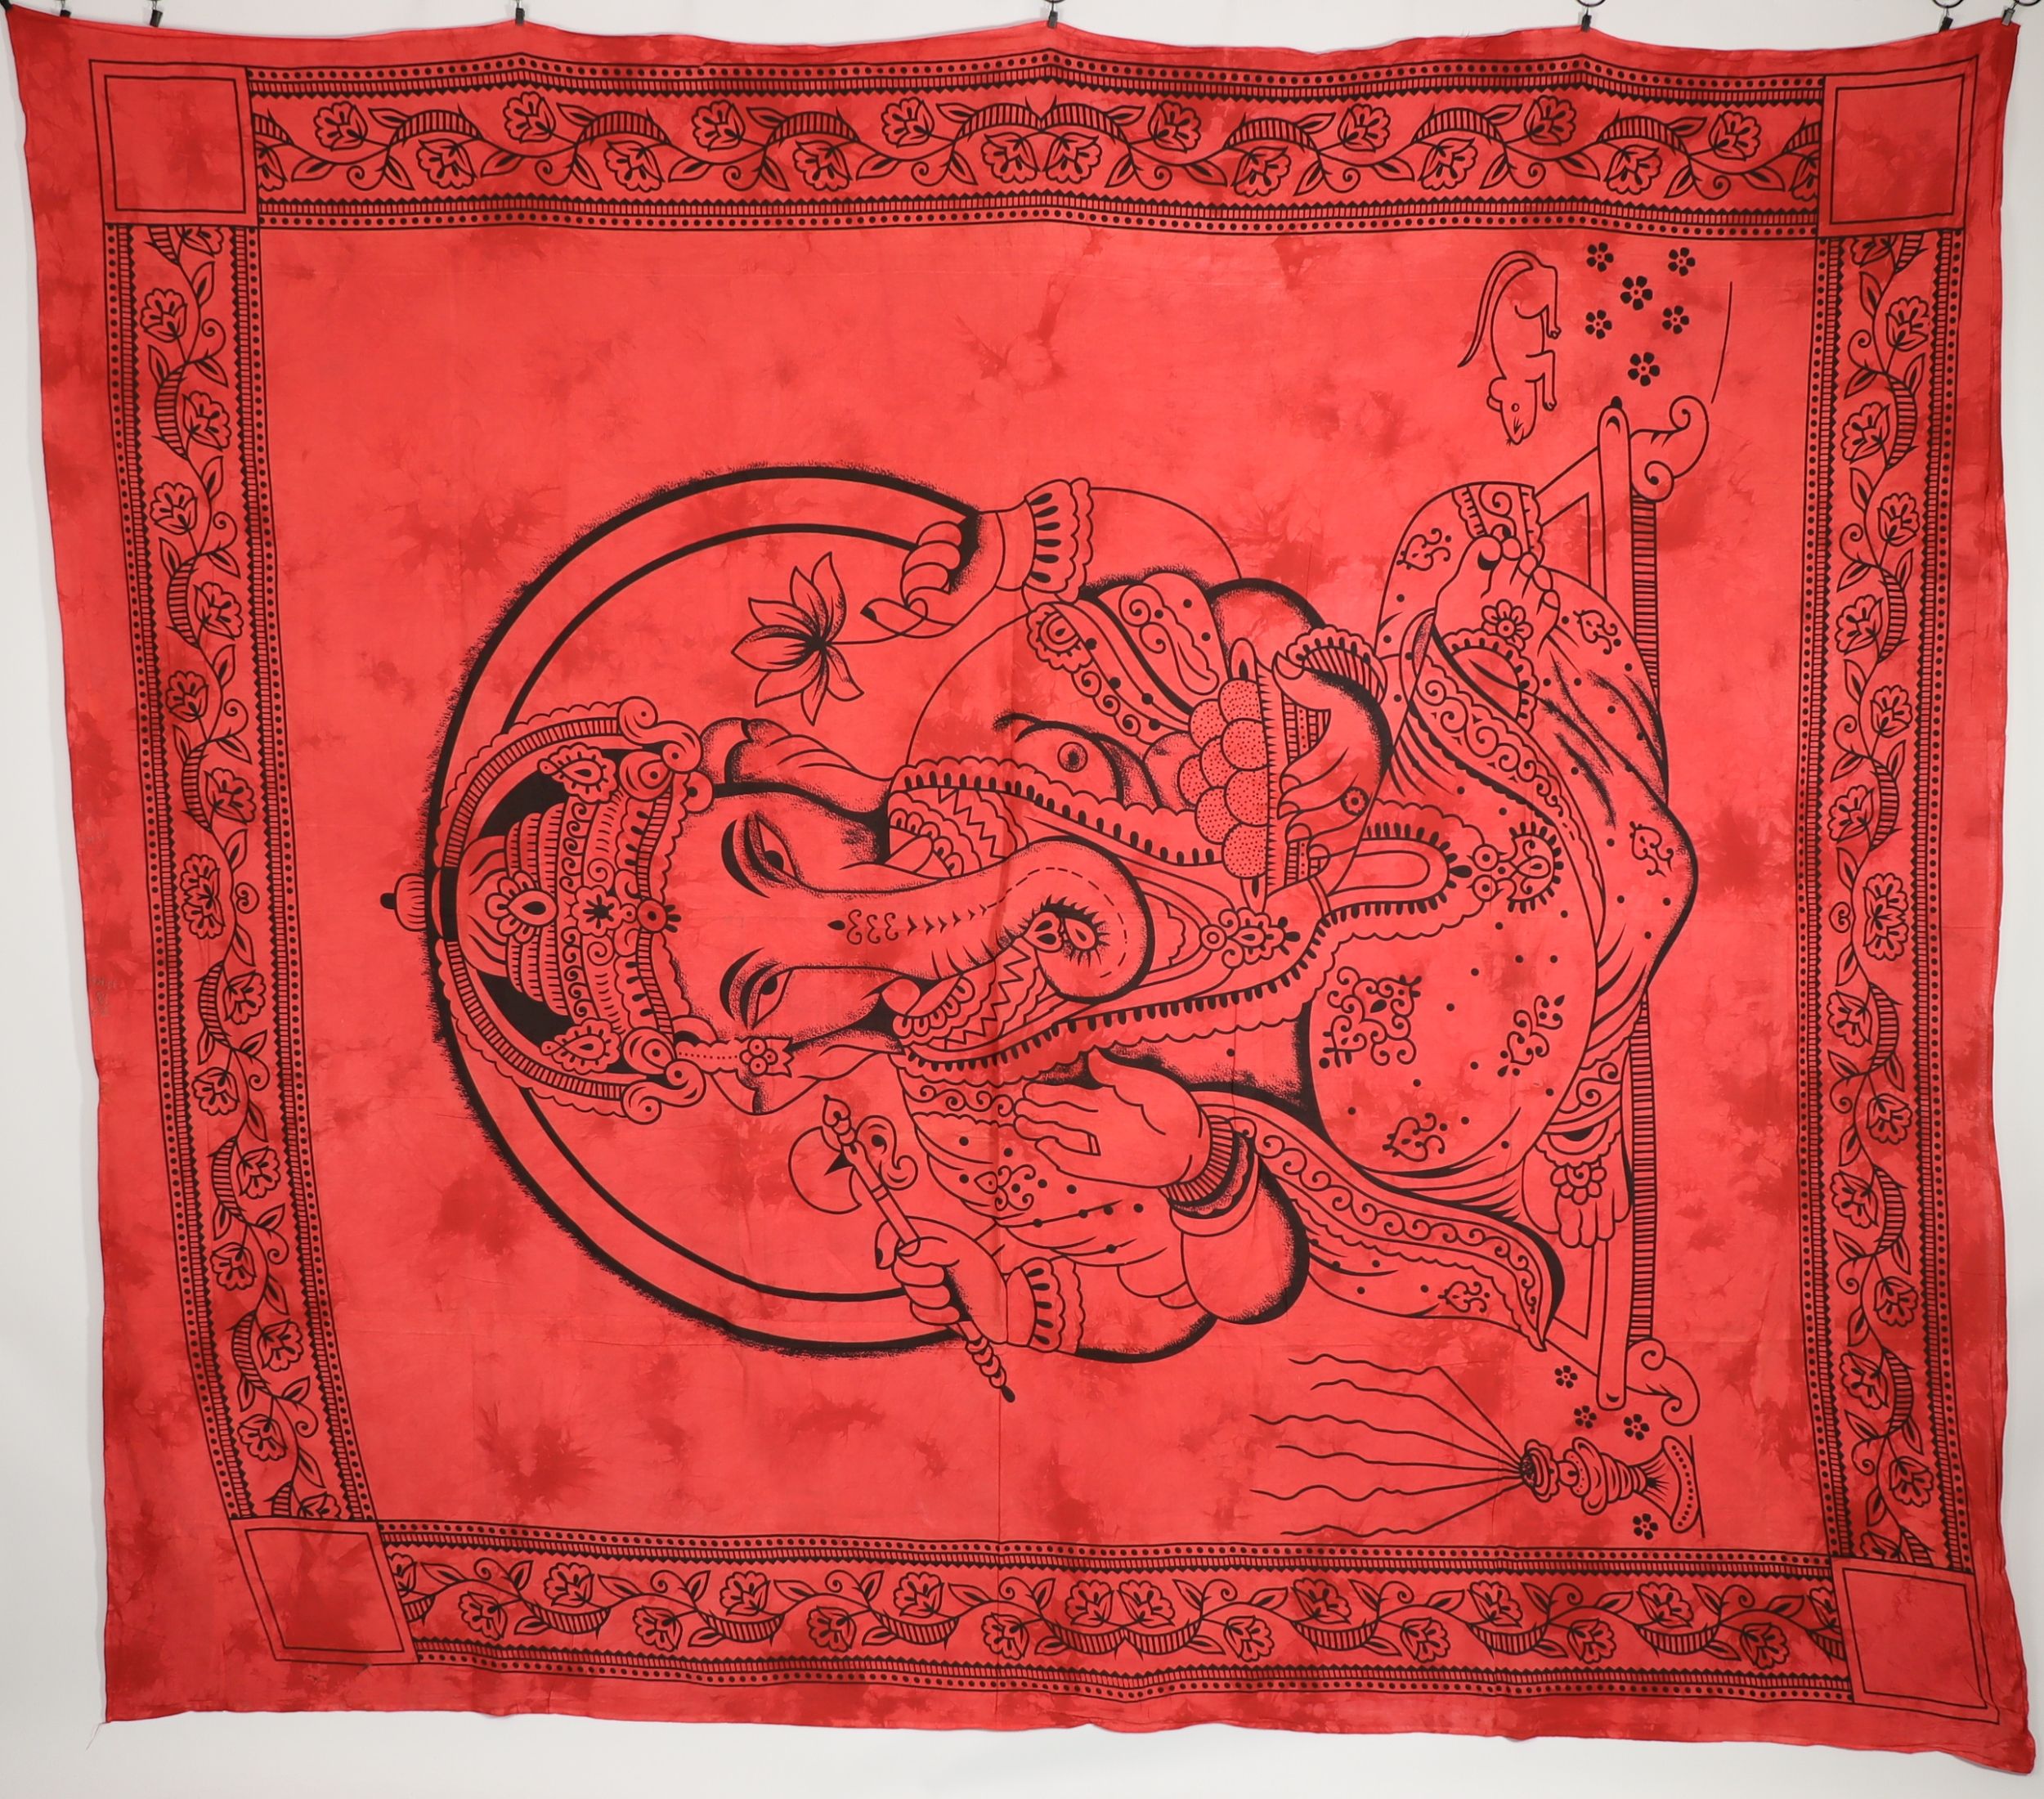 Wandtuch XXL 210x230 - Ganesha - 100% Baumwolle - detailreicher indischer Druck - mehrfarbig - dekoratives Tuch, Wandbild, Tagesdecke, Bedcover, Vorhang, Picknick-Decke, Strandtuch